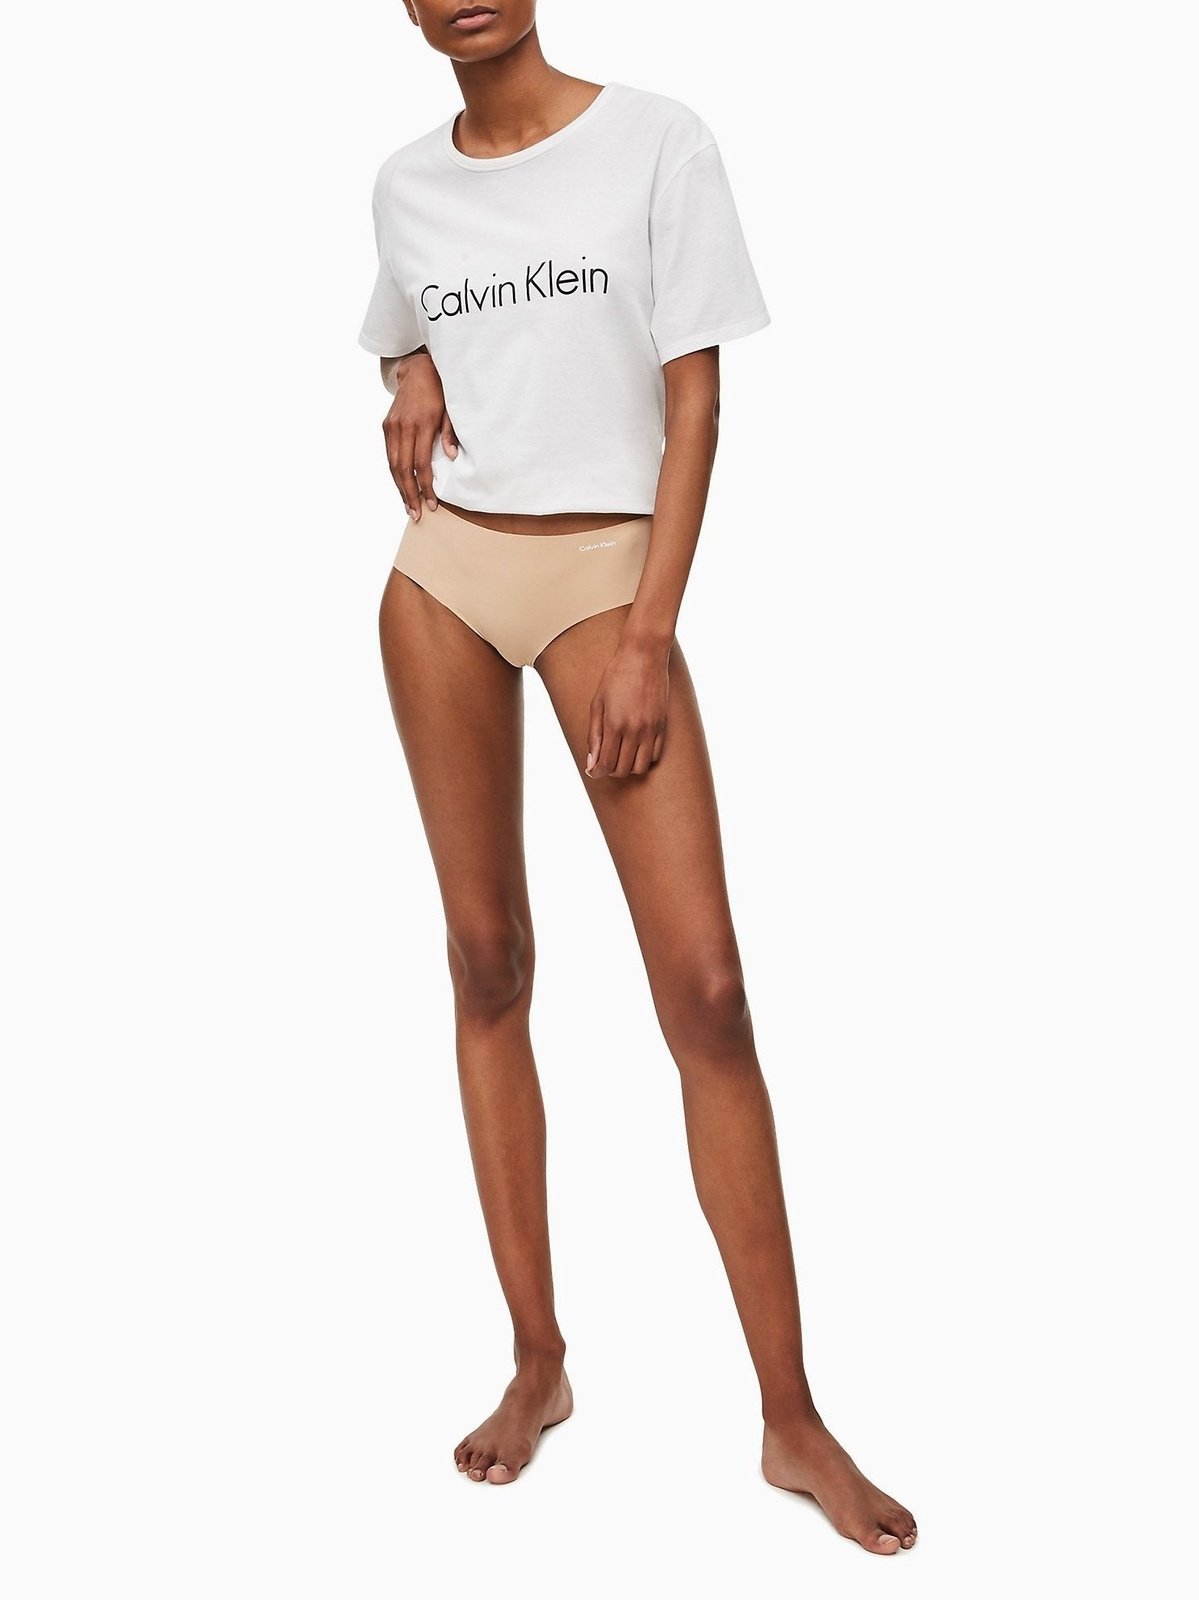 Calvin Klein Invisibles Hipster Brief - Light Caramel